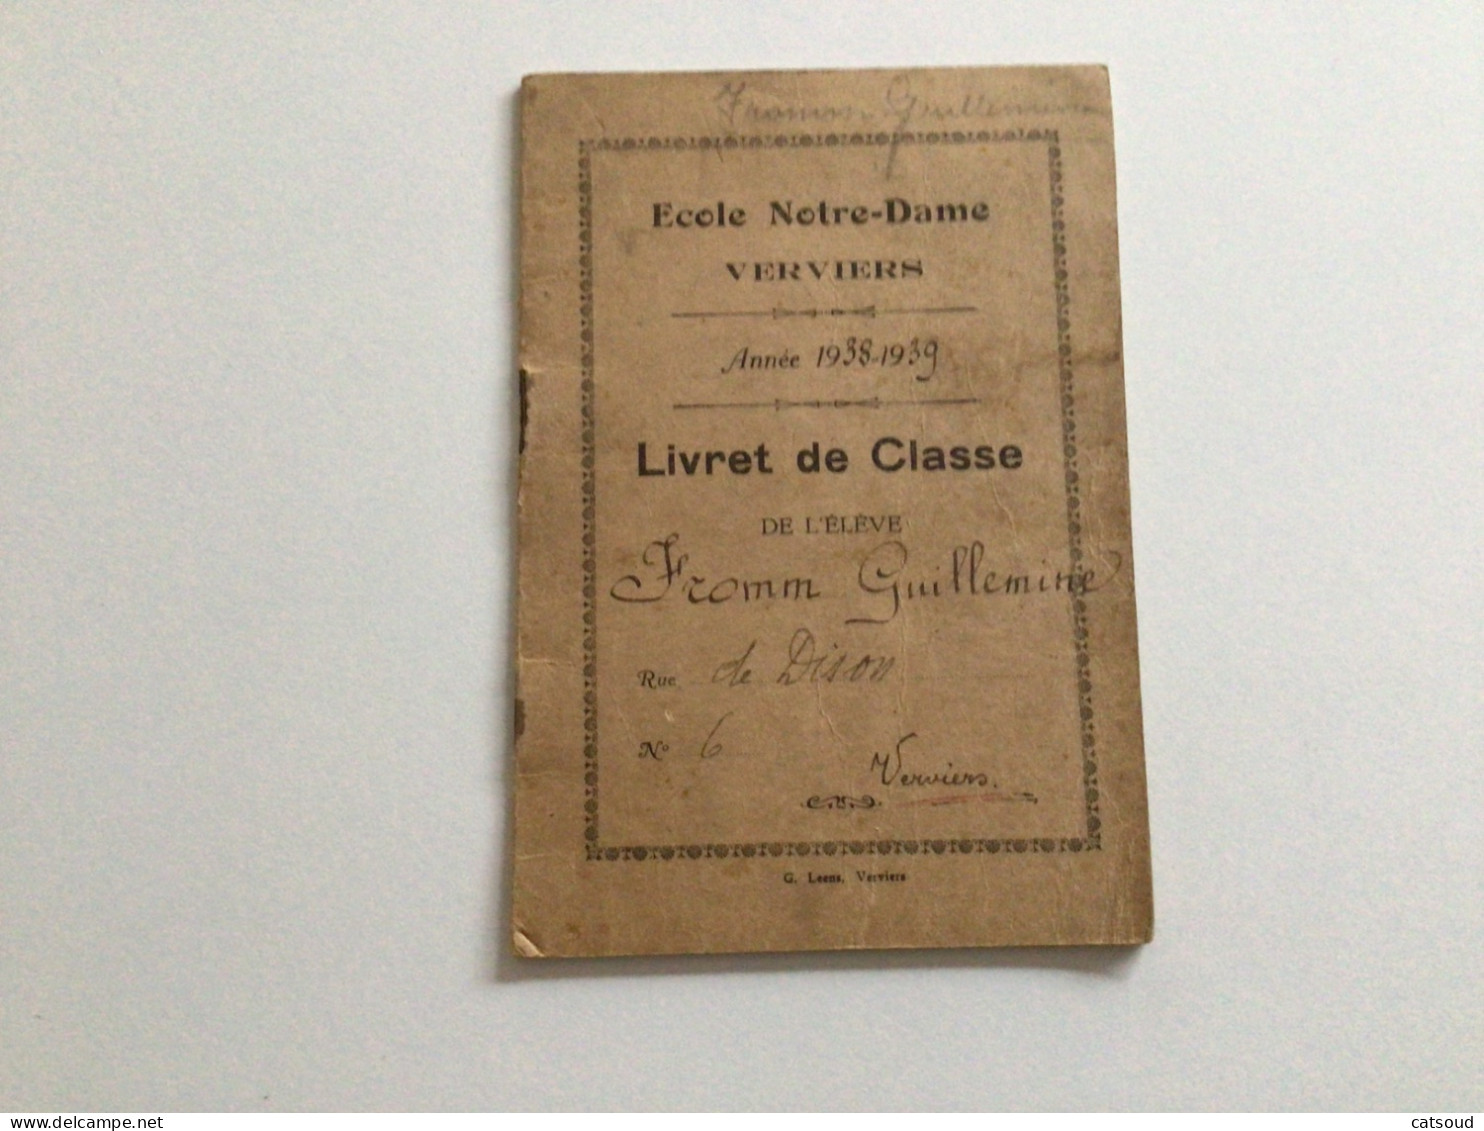 Ancien Document Commercial (1938-1939) Verviers Livret De Classe École Notre-Dame Guillemine FROMM - Diplomas Y Calificaciones Escolares